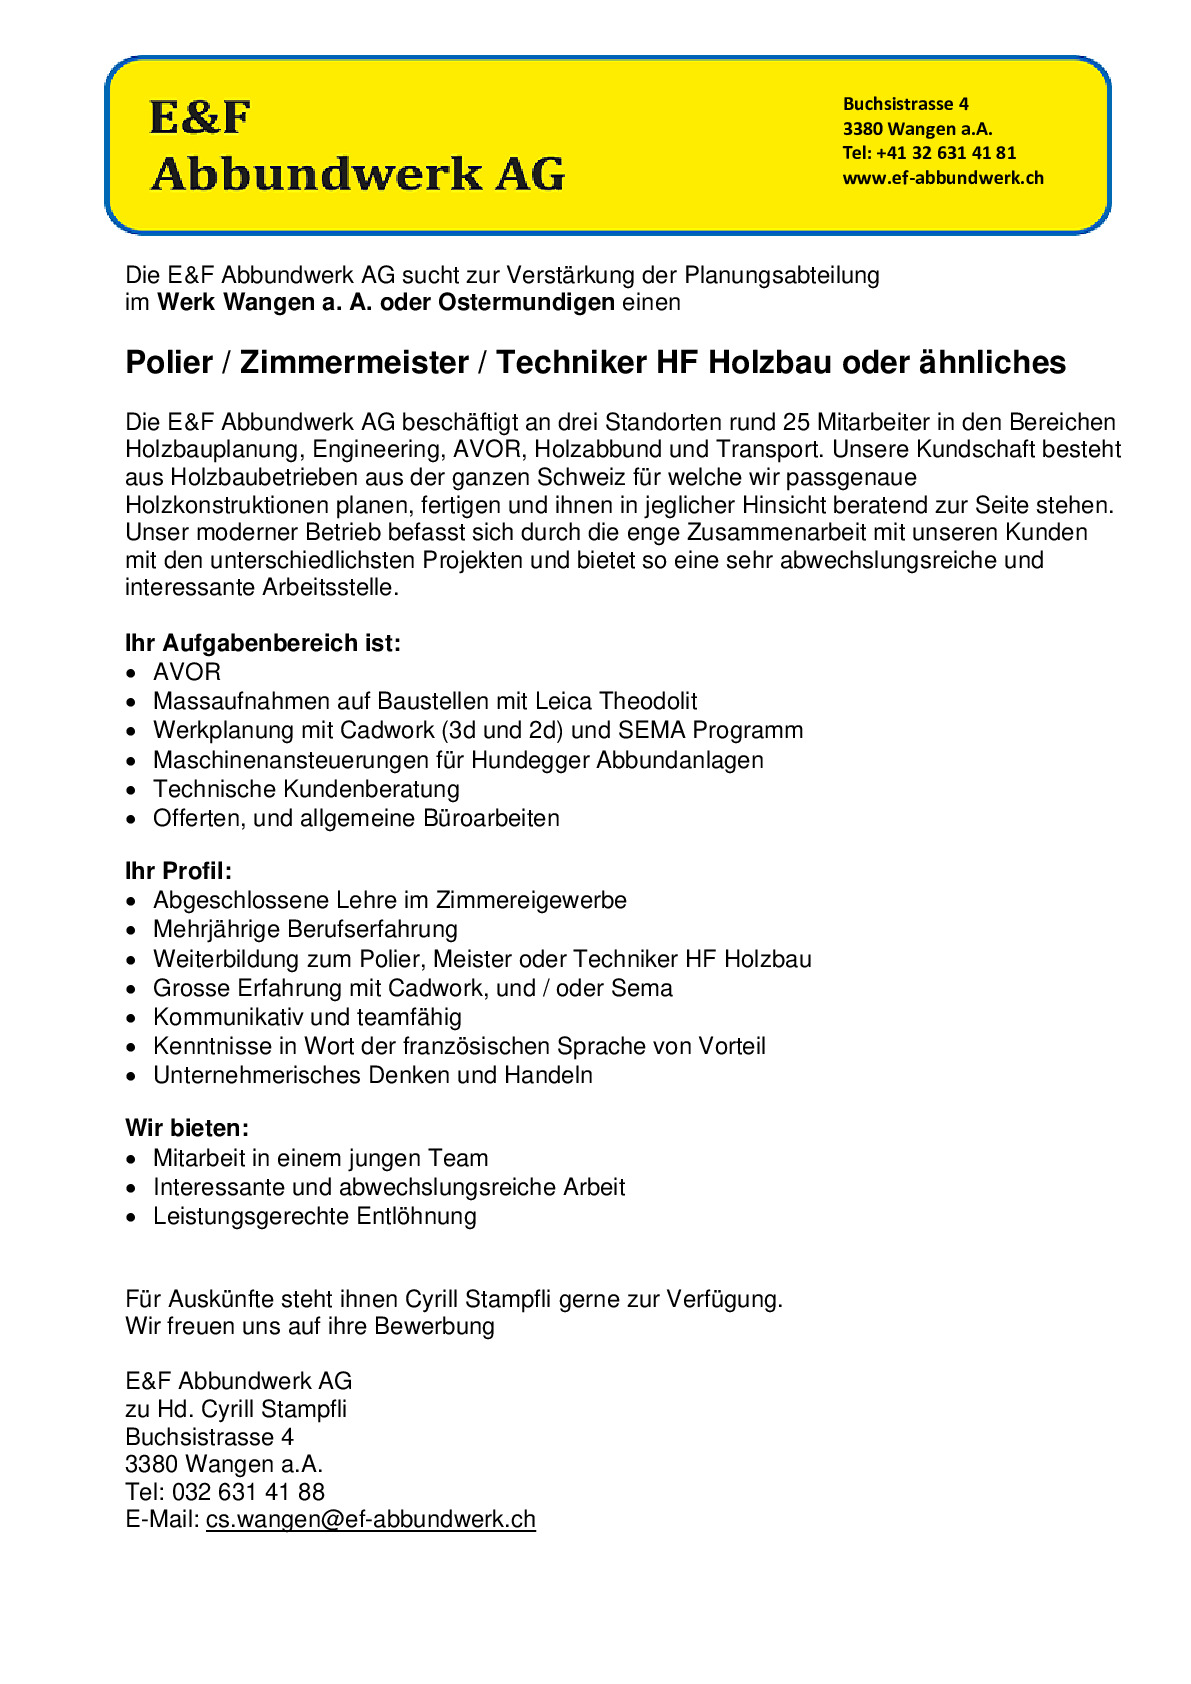 Polier / Zimmermeister / Techniker HF Holzbau oder ähnliches